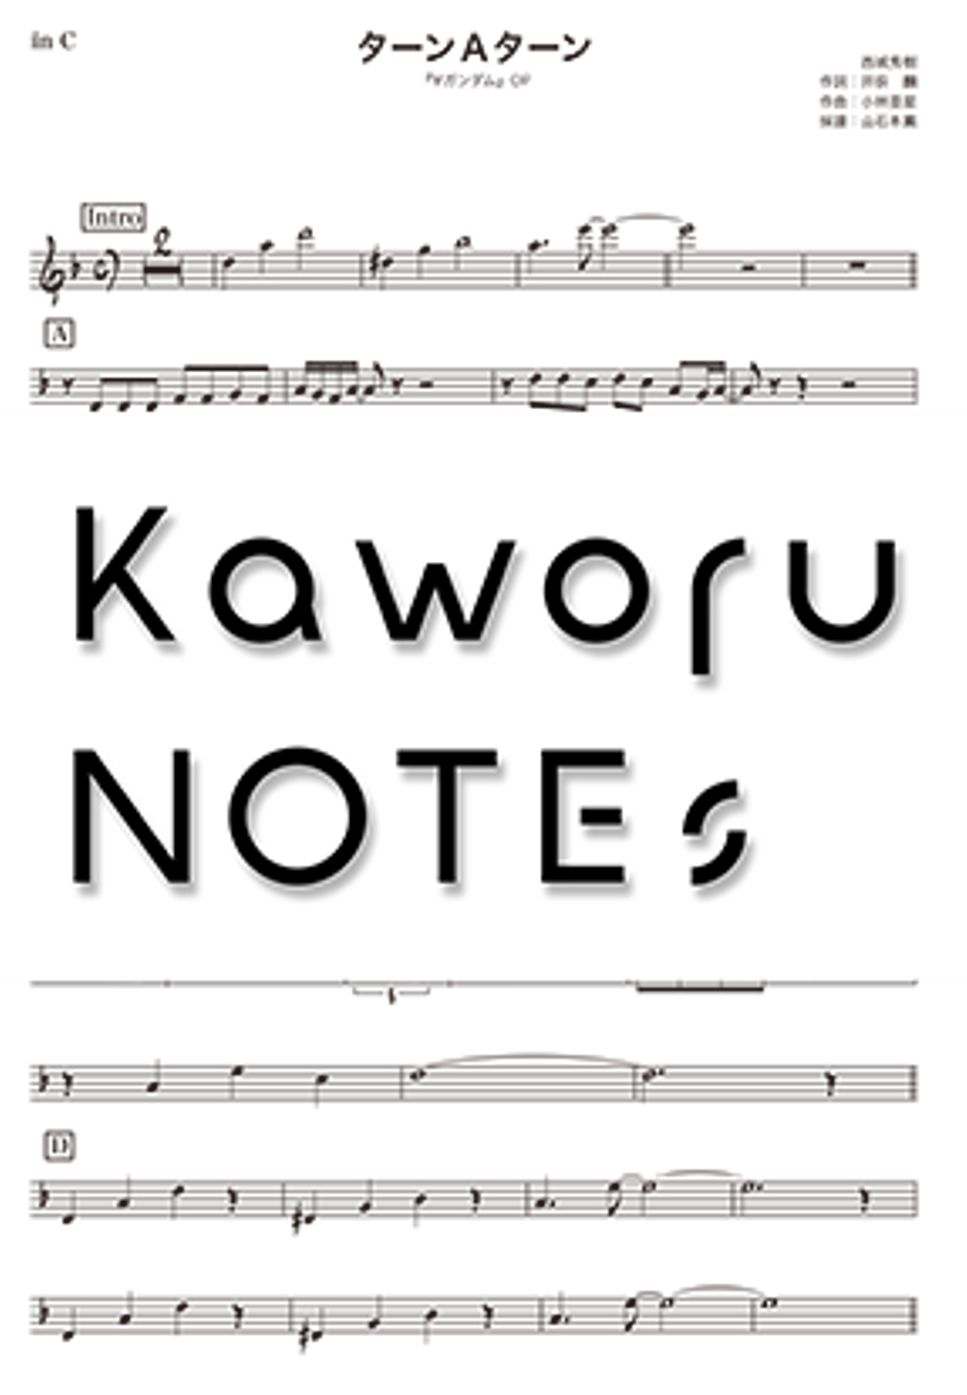 西城秀樹 - ターンＡターン（in E♭『∀ガンダム』） by Kaworu NOTEs